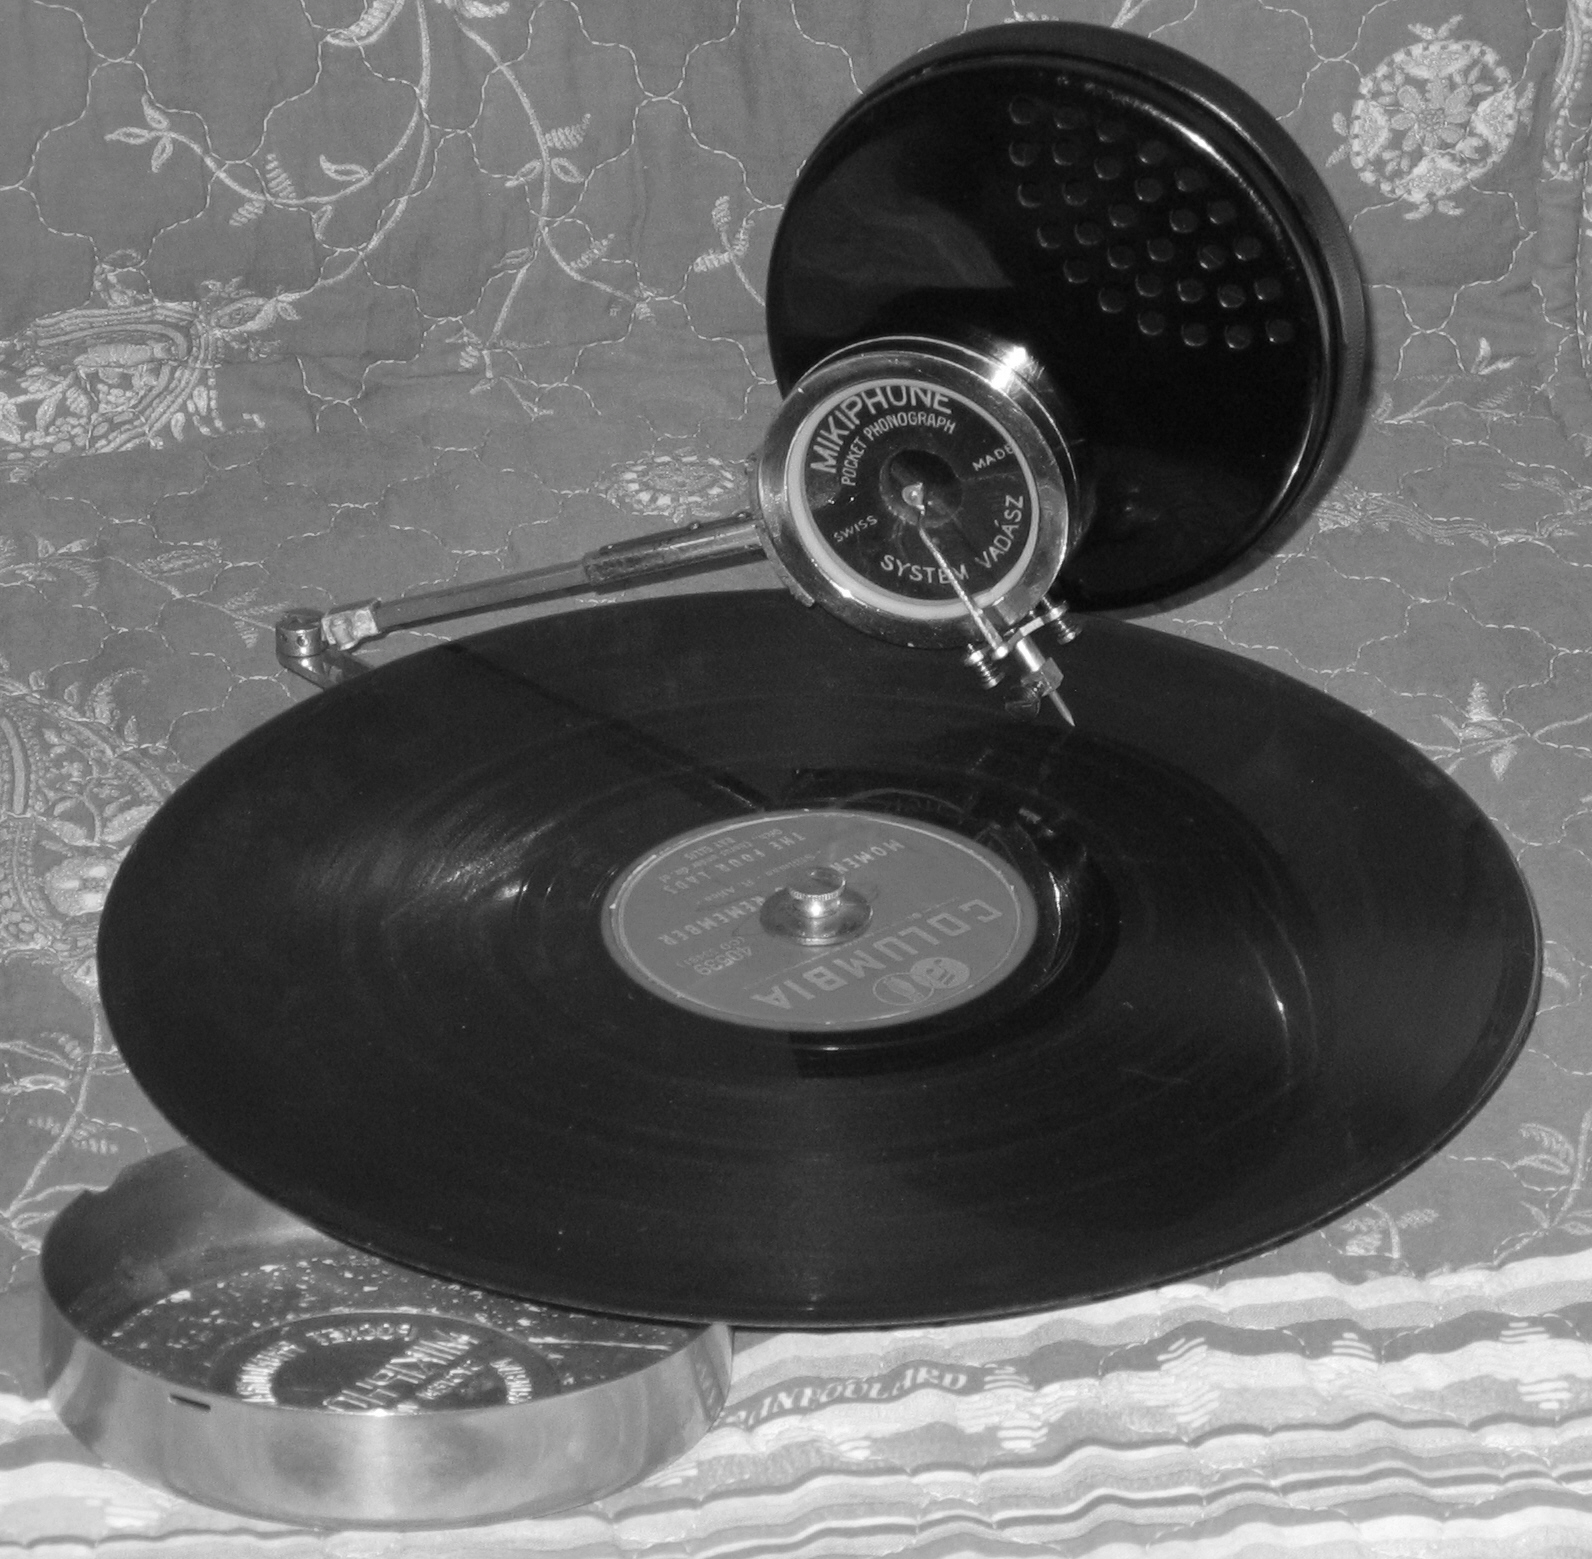 Mikiphone, Grammophon von 1925, gerne an entlegenen Orten der Welt benutzt. Nach Spielende wird das Mikiphone zerlegt und in seiner Dose verstaut. An der Front oft eine der wenigen erfreulichen Momente, Privatbesitz